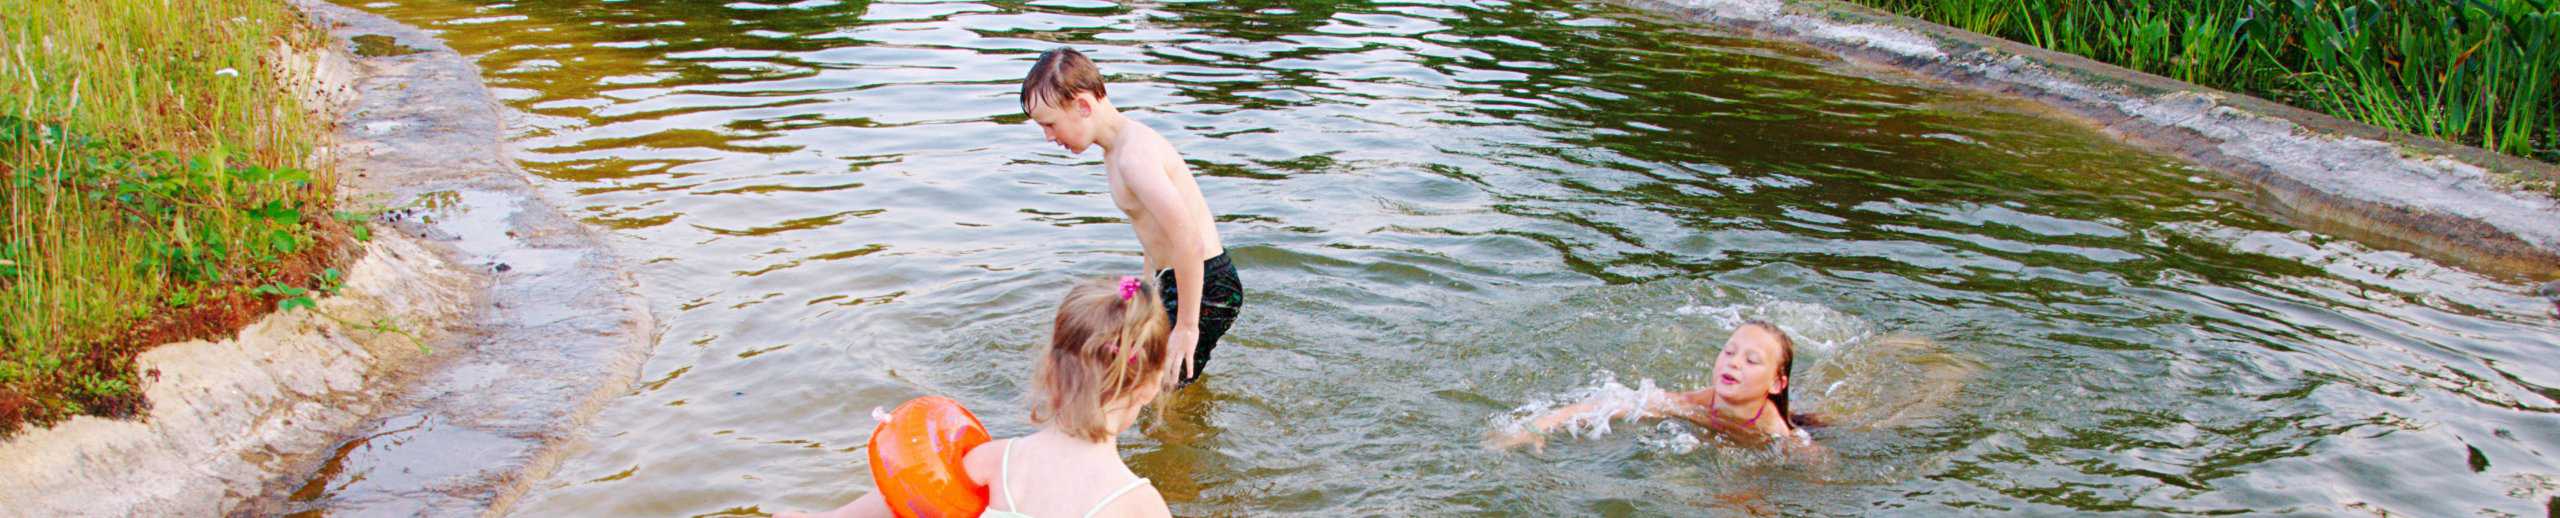 Planschende und schwimmende Kinder in einem Teich